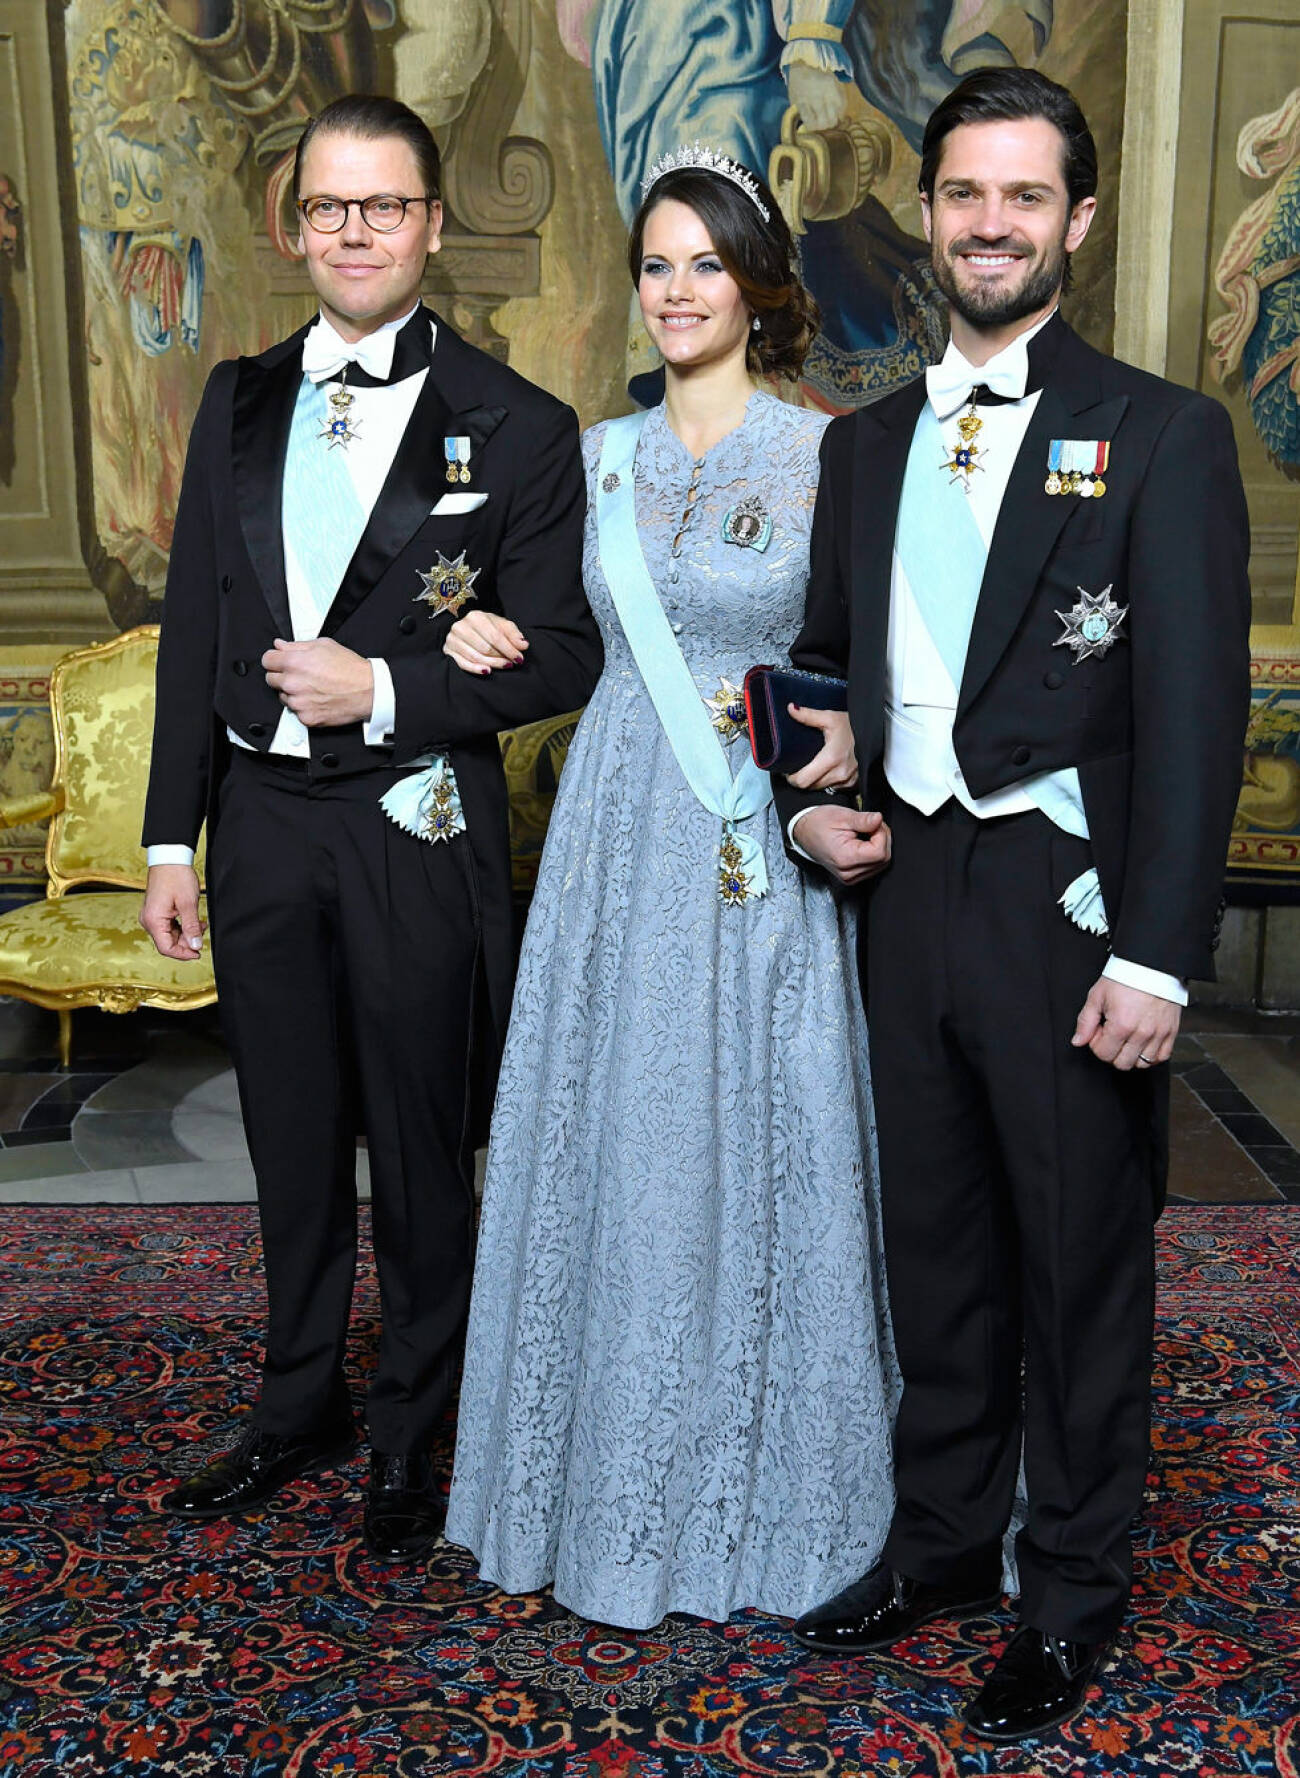 Prinsessan Sofia i blå klänning från Zetterberg